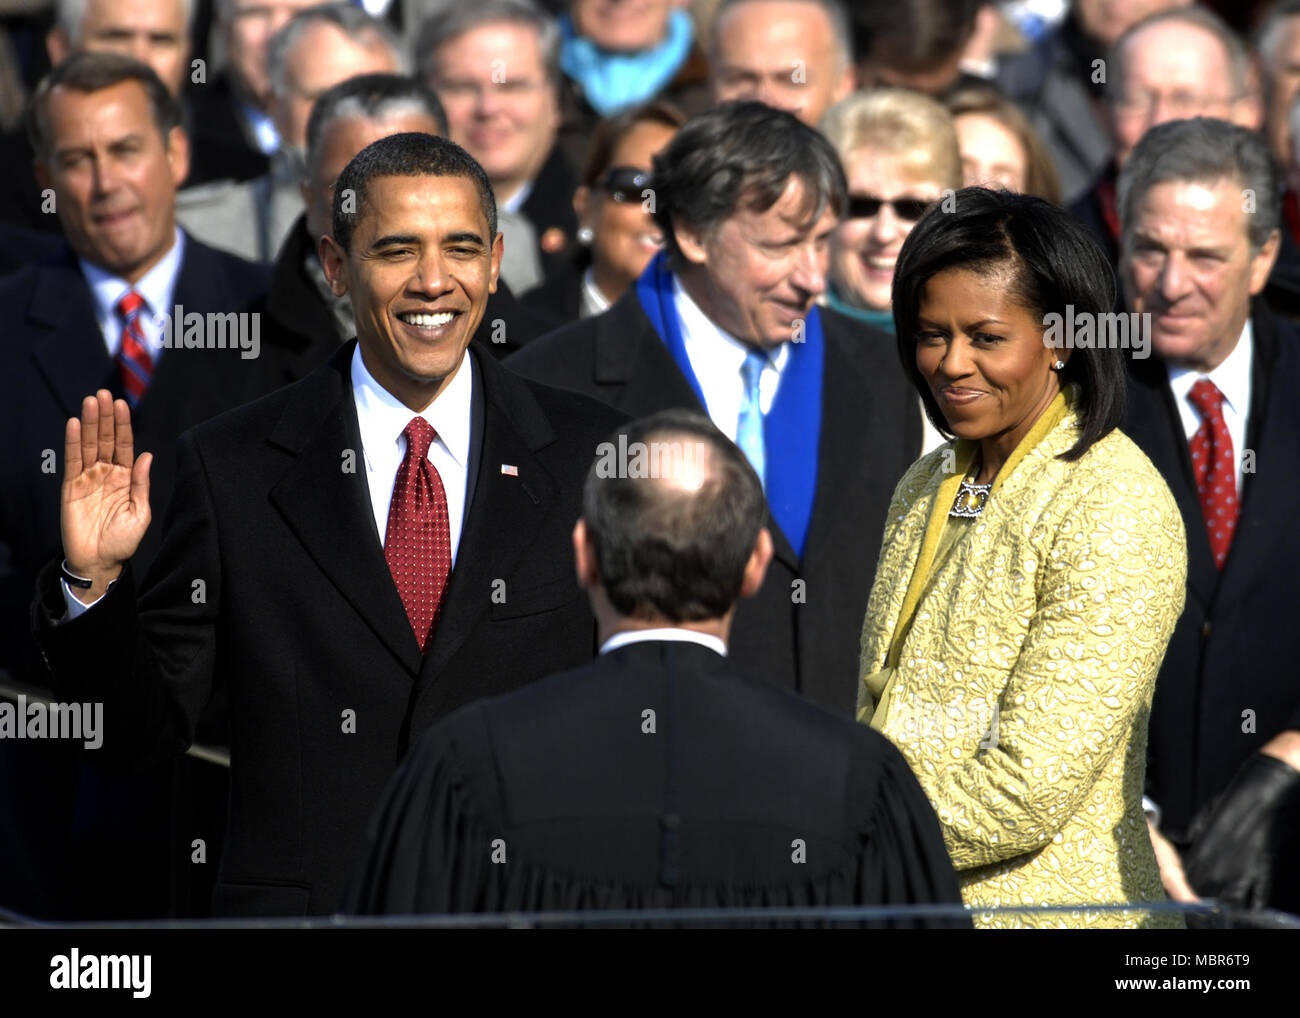 Con su familia a su lado, Barack Obama juró como el 44º presidente de los Estados Unidos por el Jefe de Justicia de los Estados Unidos John G. Roberts Jr. en Washington, D.C., 20 de enero de 2009. Foto de stock